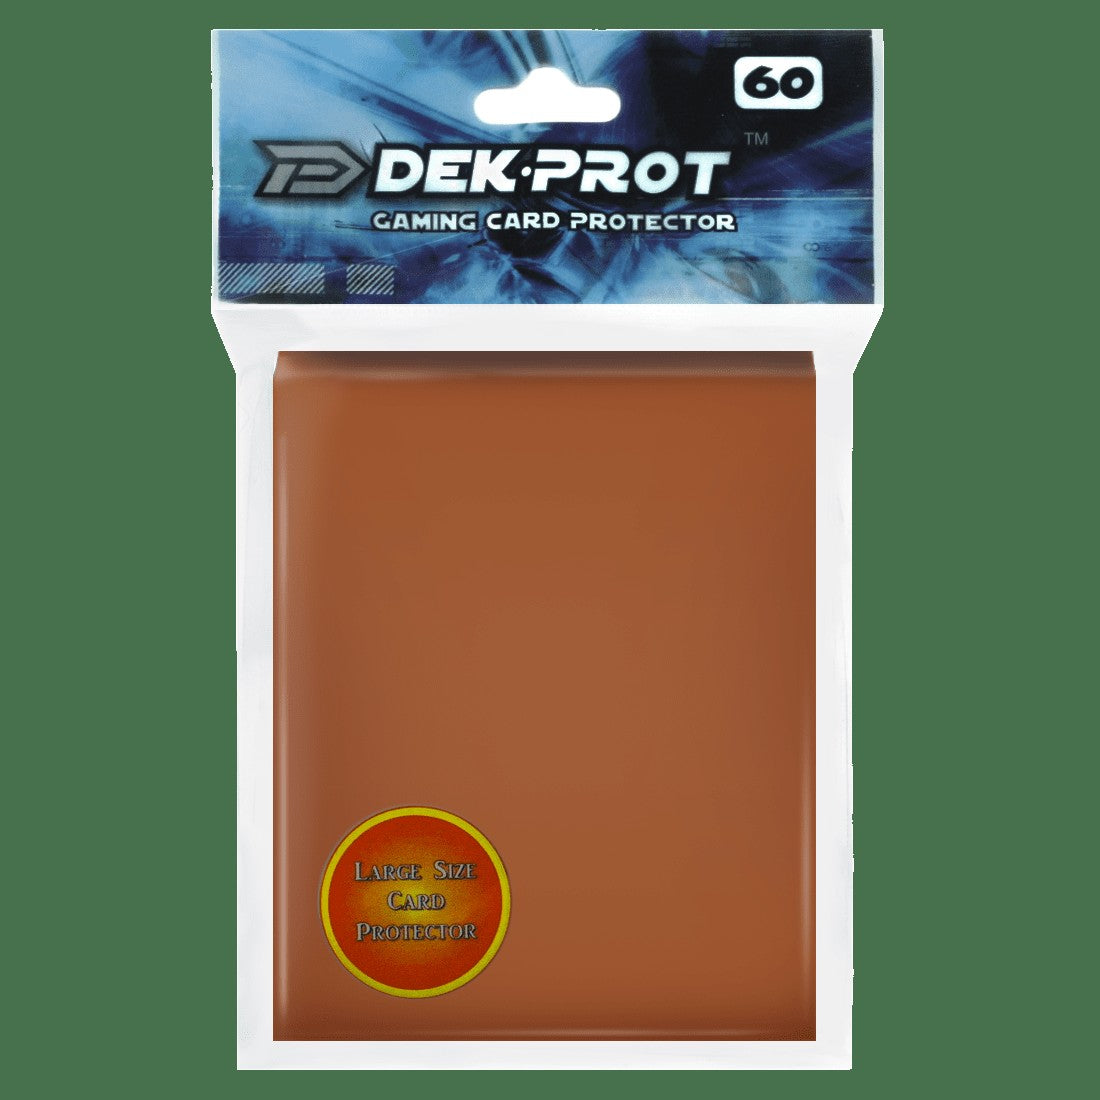 Dek Prot Standard Sized Card Sleeves - Mocha Brown (60 Card Sleeves)